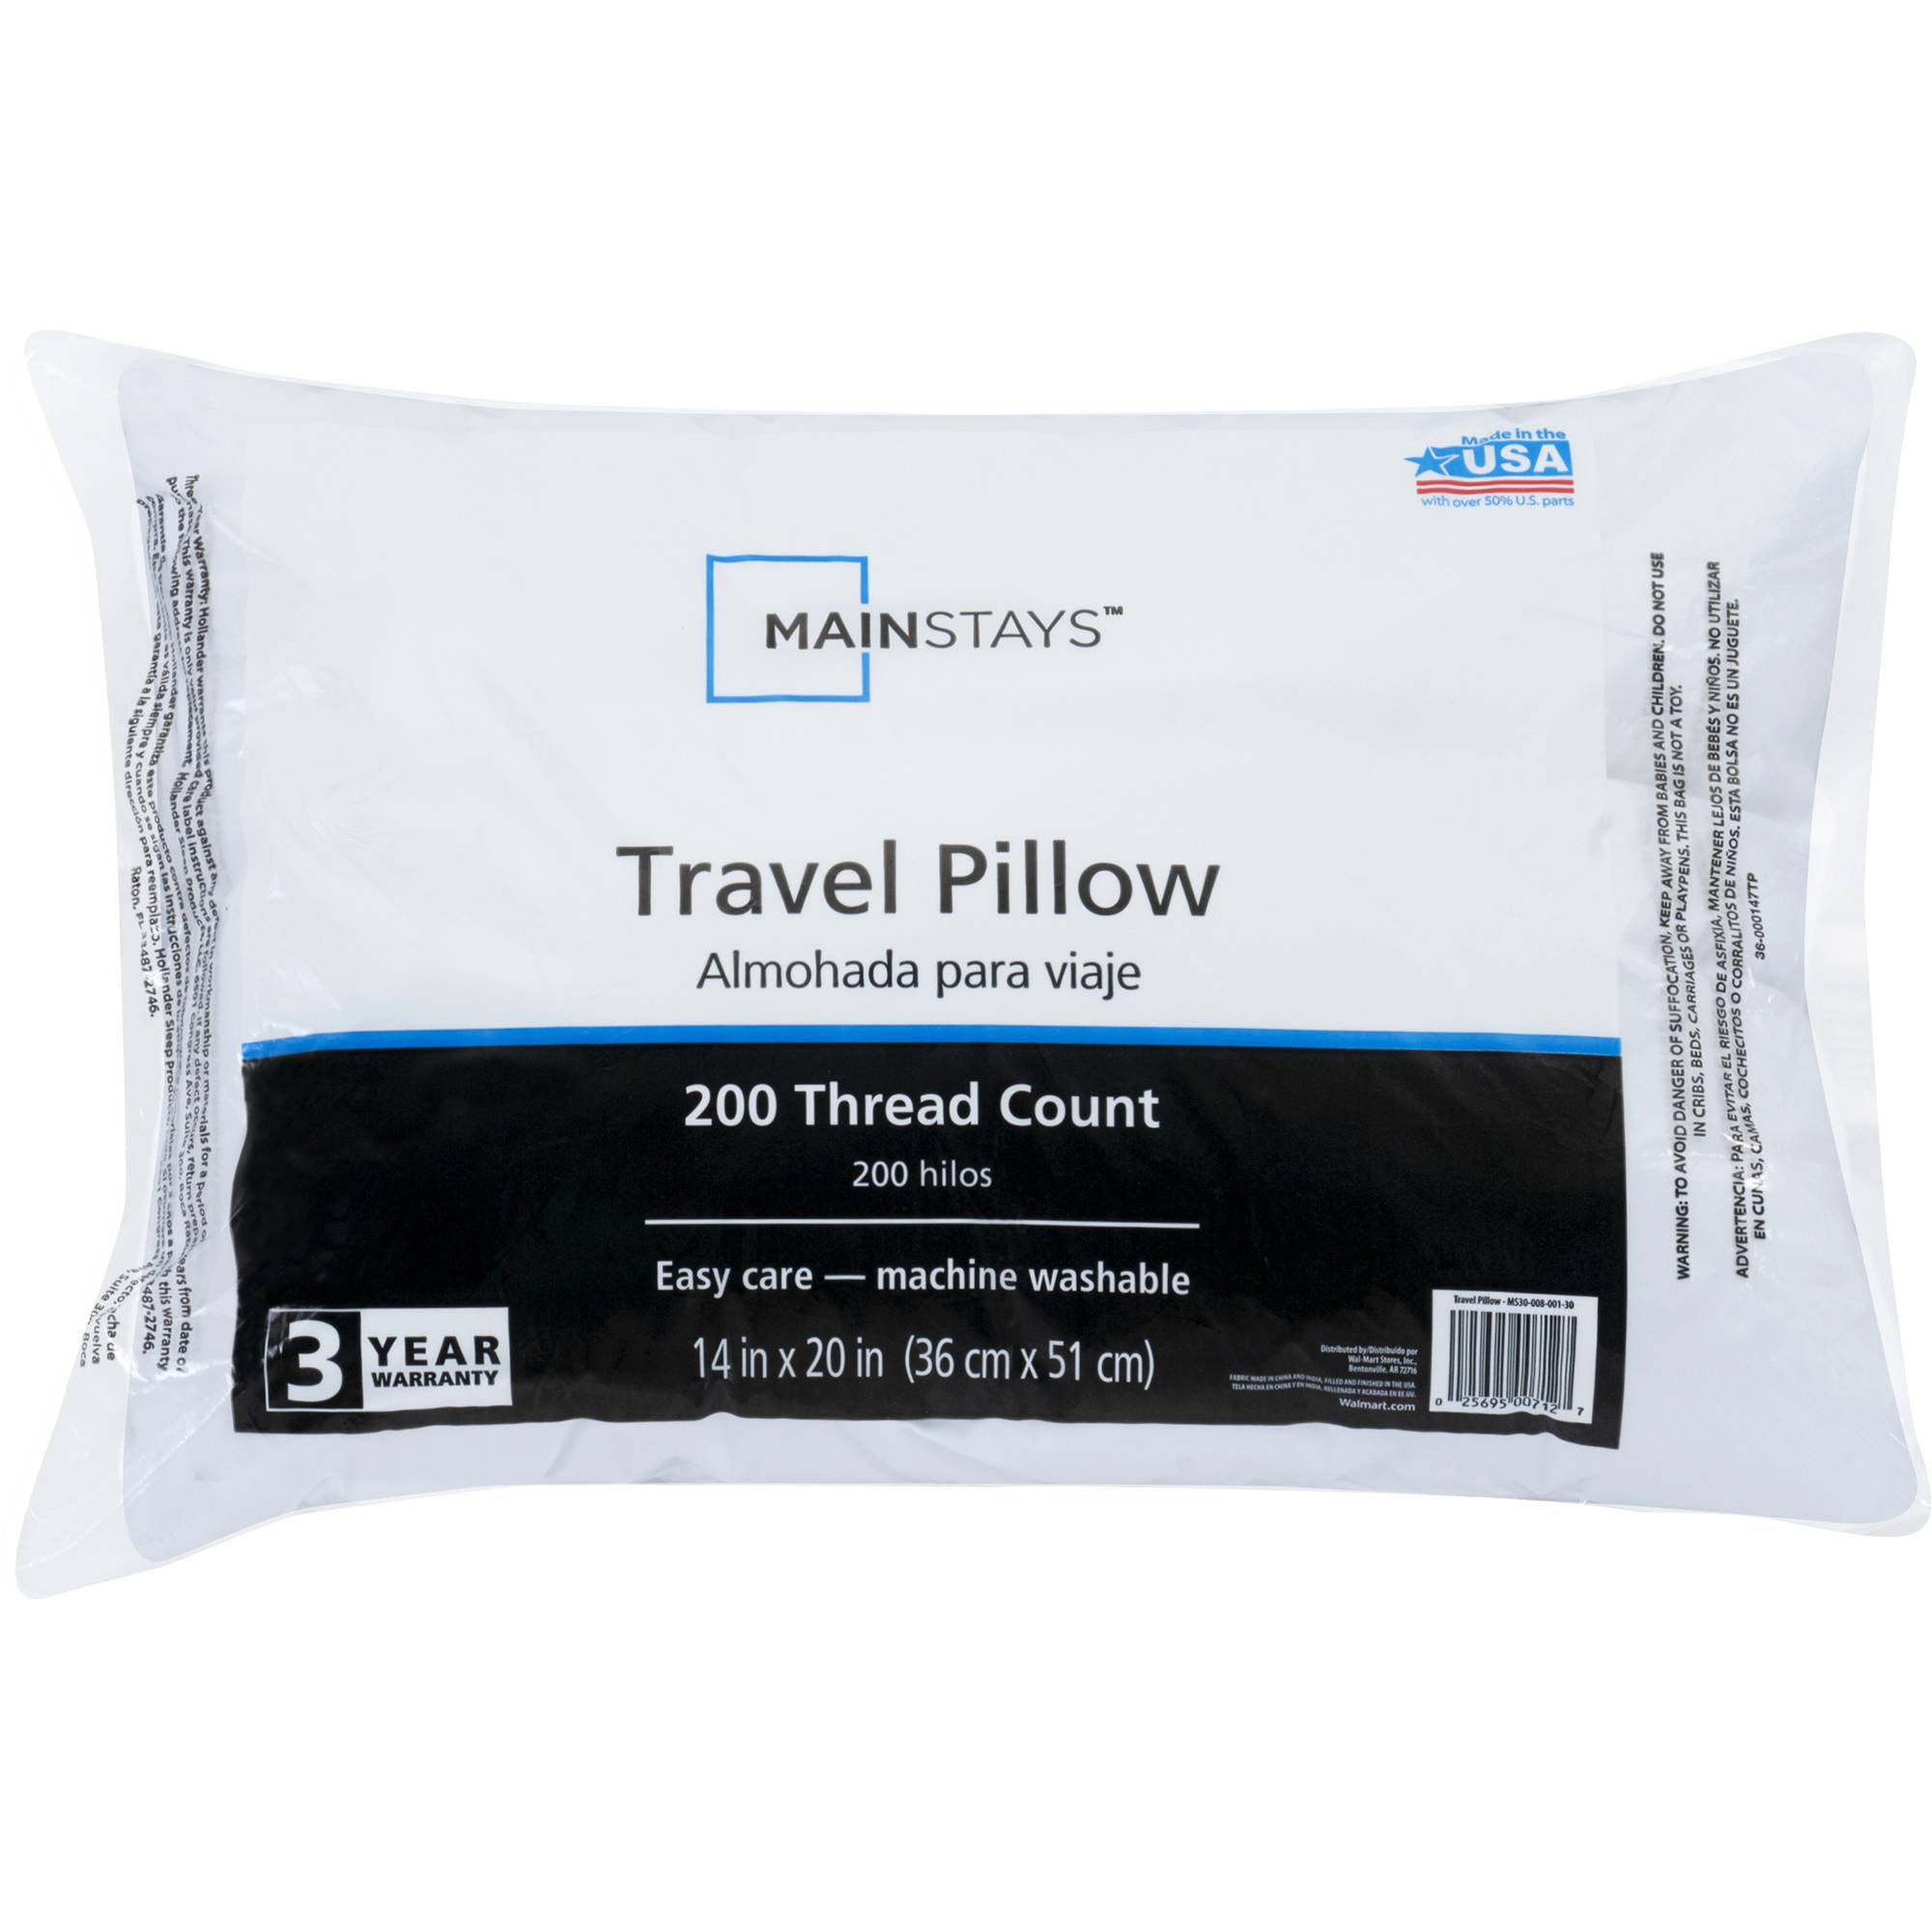 my pillow travel pillow walmart